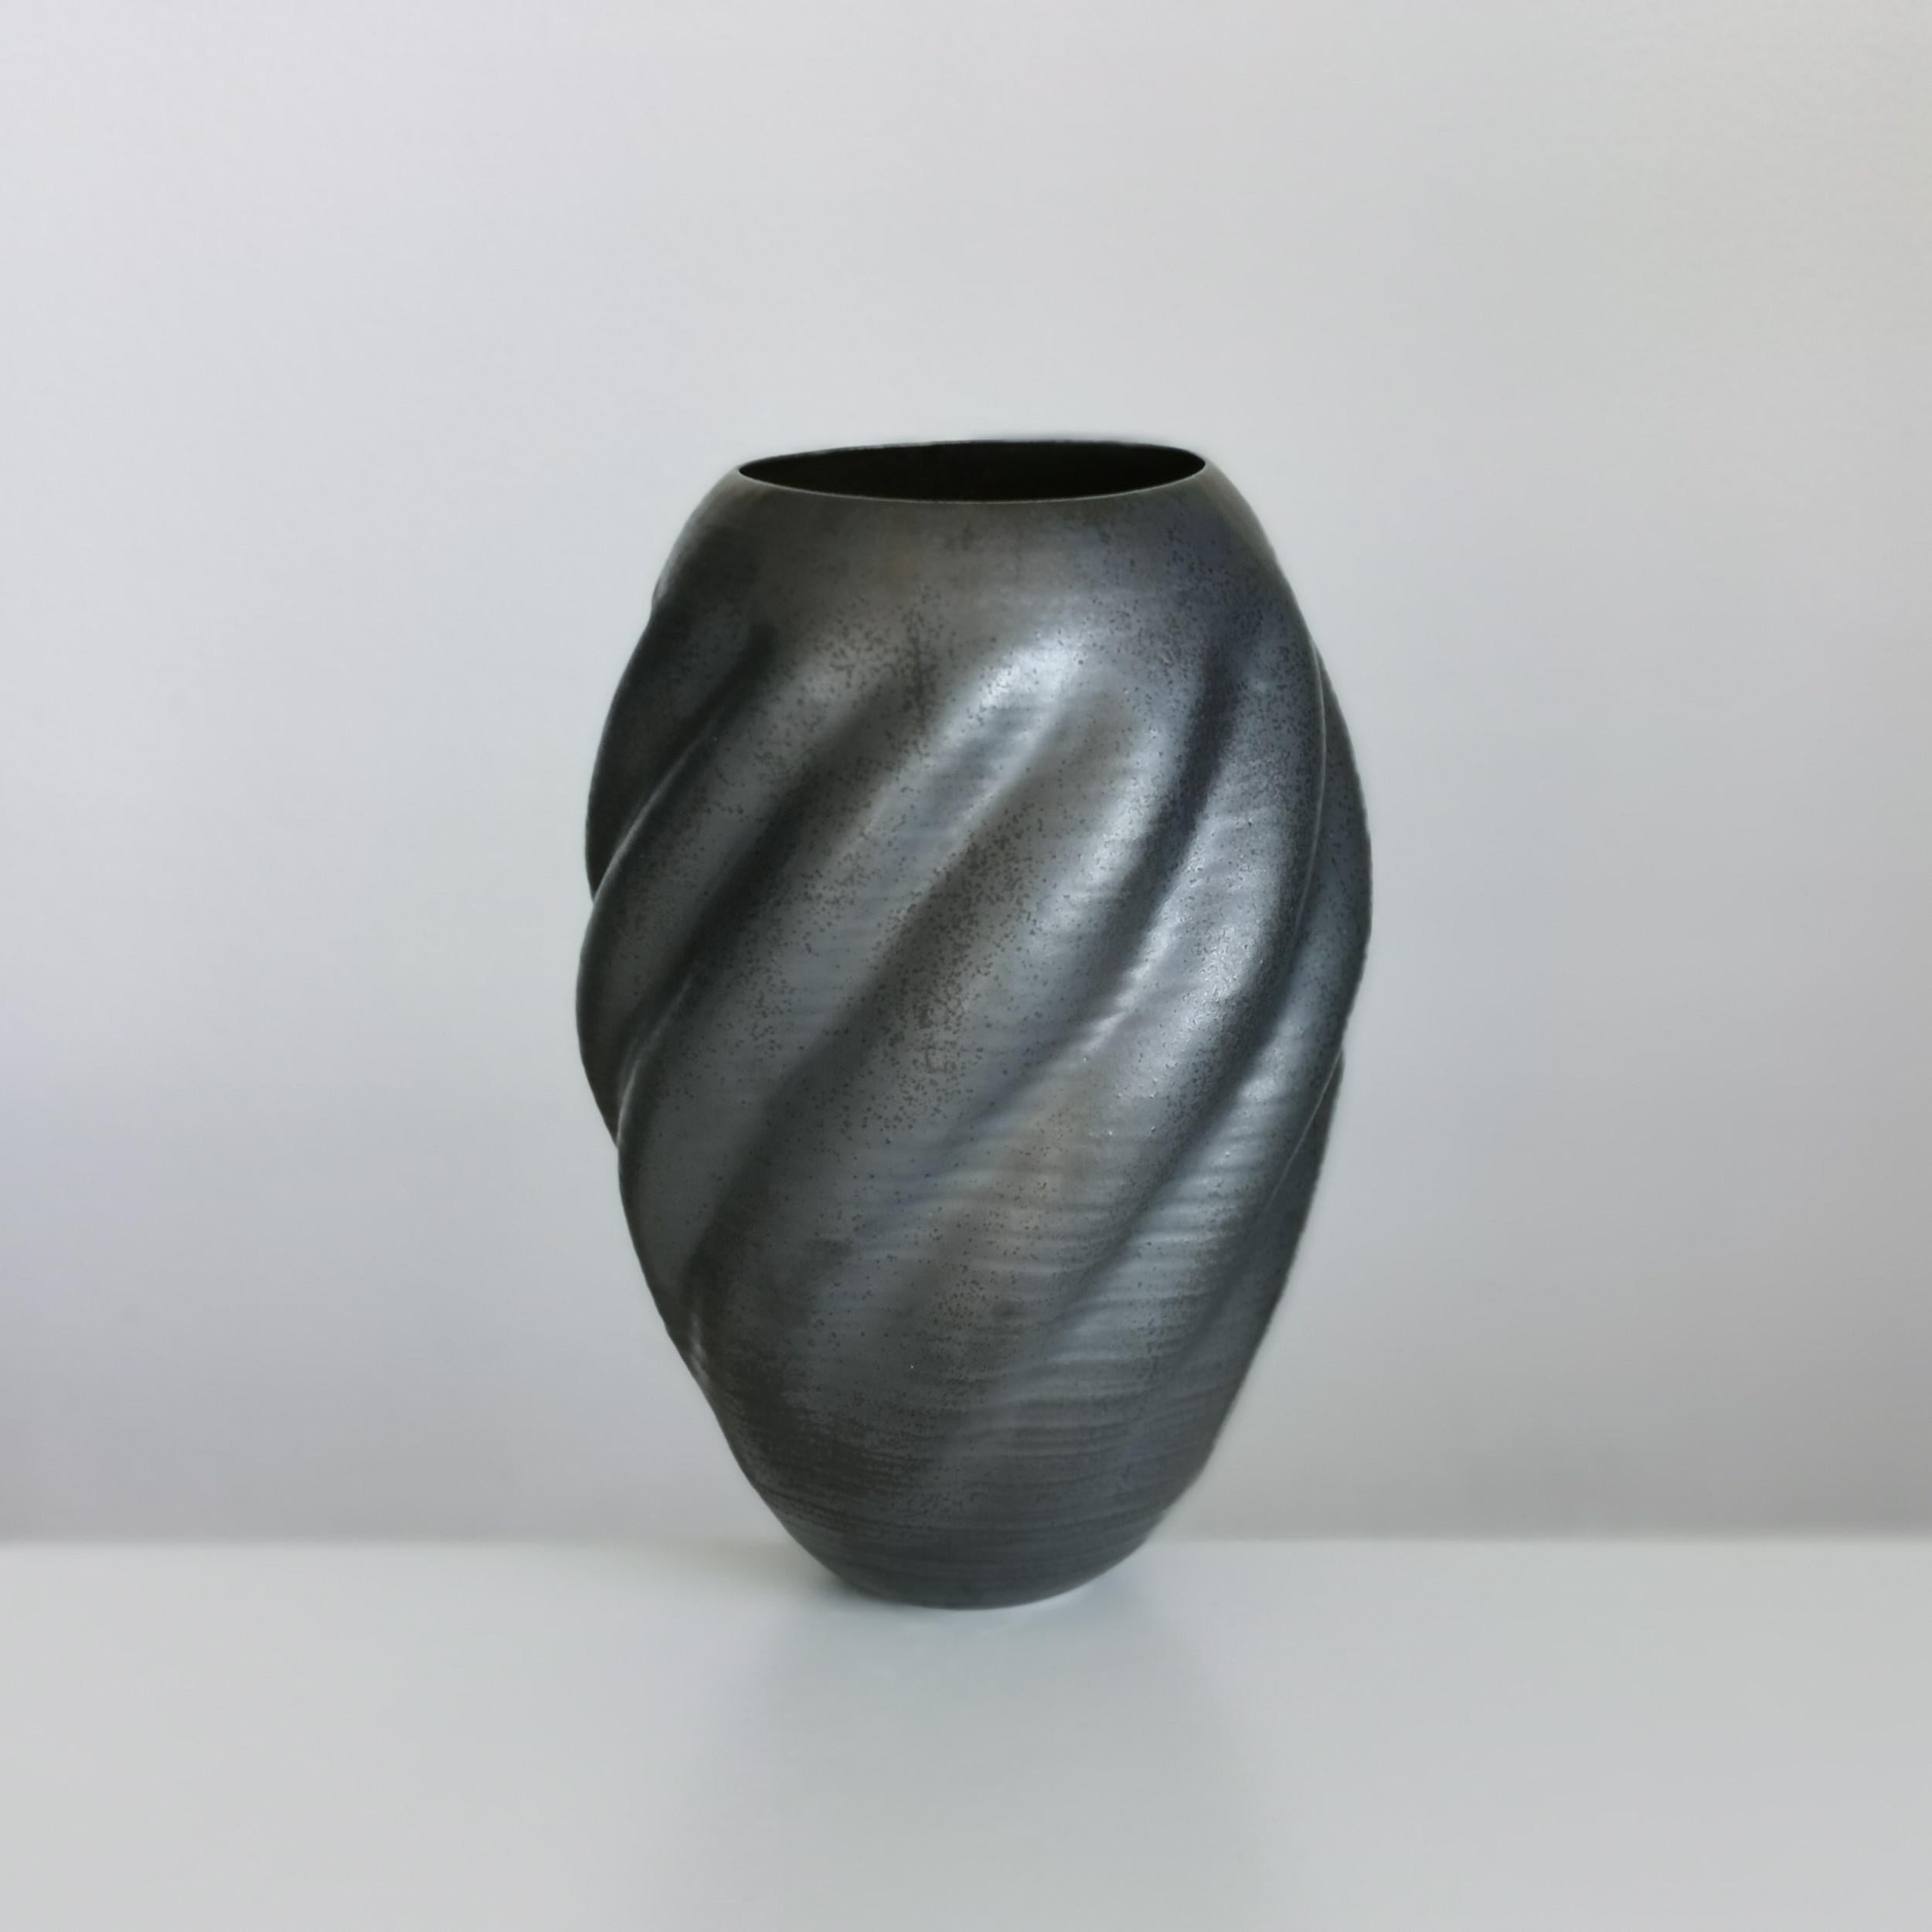 Contemporary Unique Ceramic Sculpture Vessel N.55, Black Wave Form, Objet d'Art For Sale